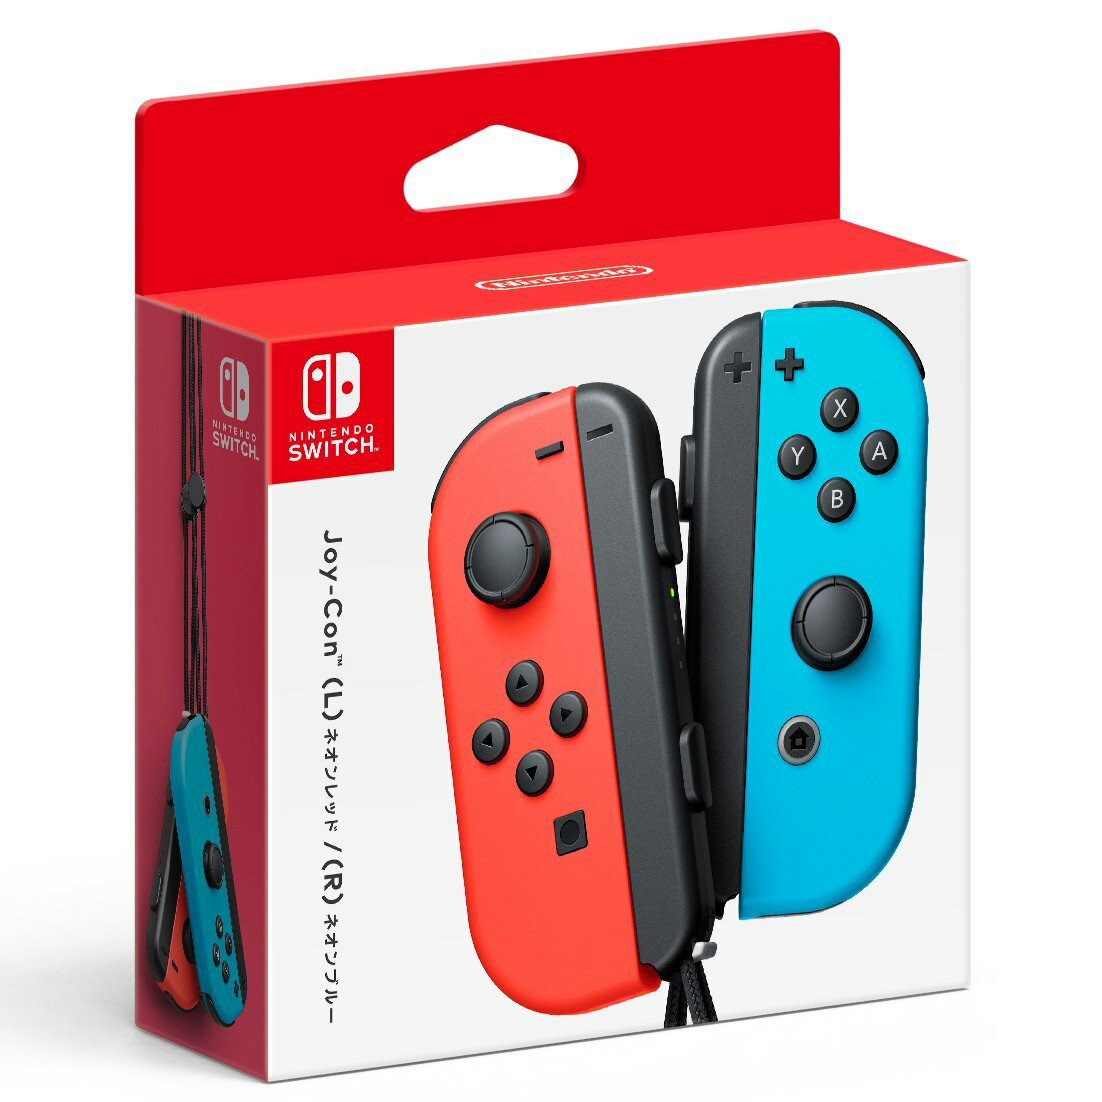 現貨供應中[普遍級]Nintendo Switch Joy-Con 控制器組(電光紅 / 電光藍)